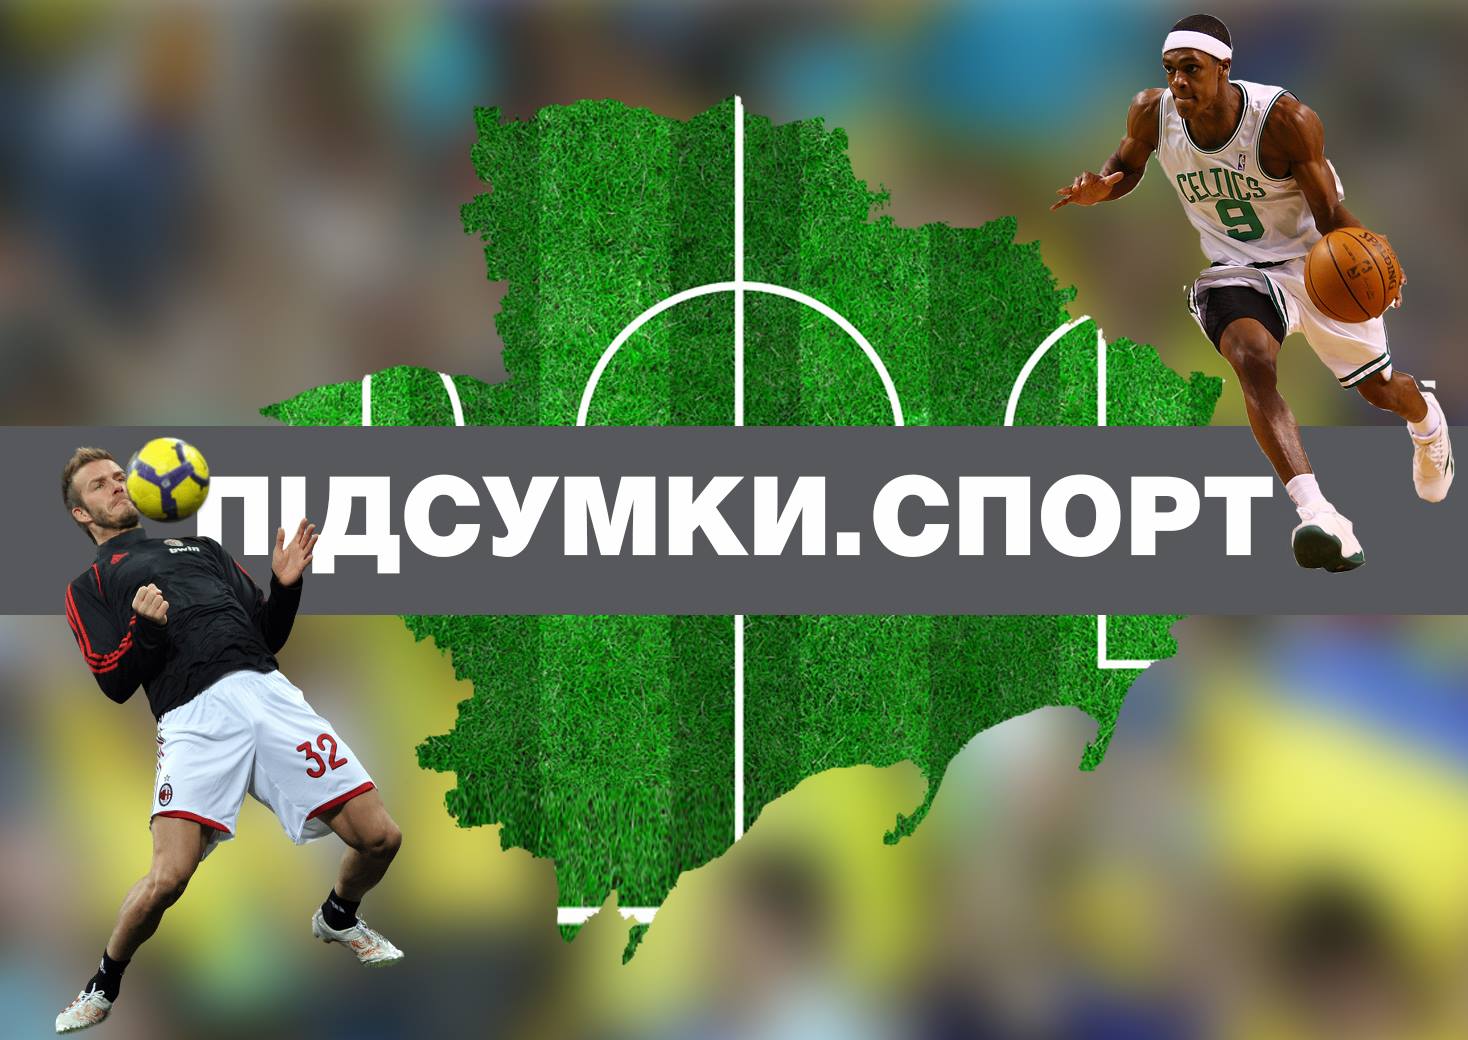 Возвращение капитана, старт Европейских игр, сборная Украины по стритболу пробилась в четвертьфинал – спортивные итоги четверга